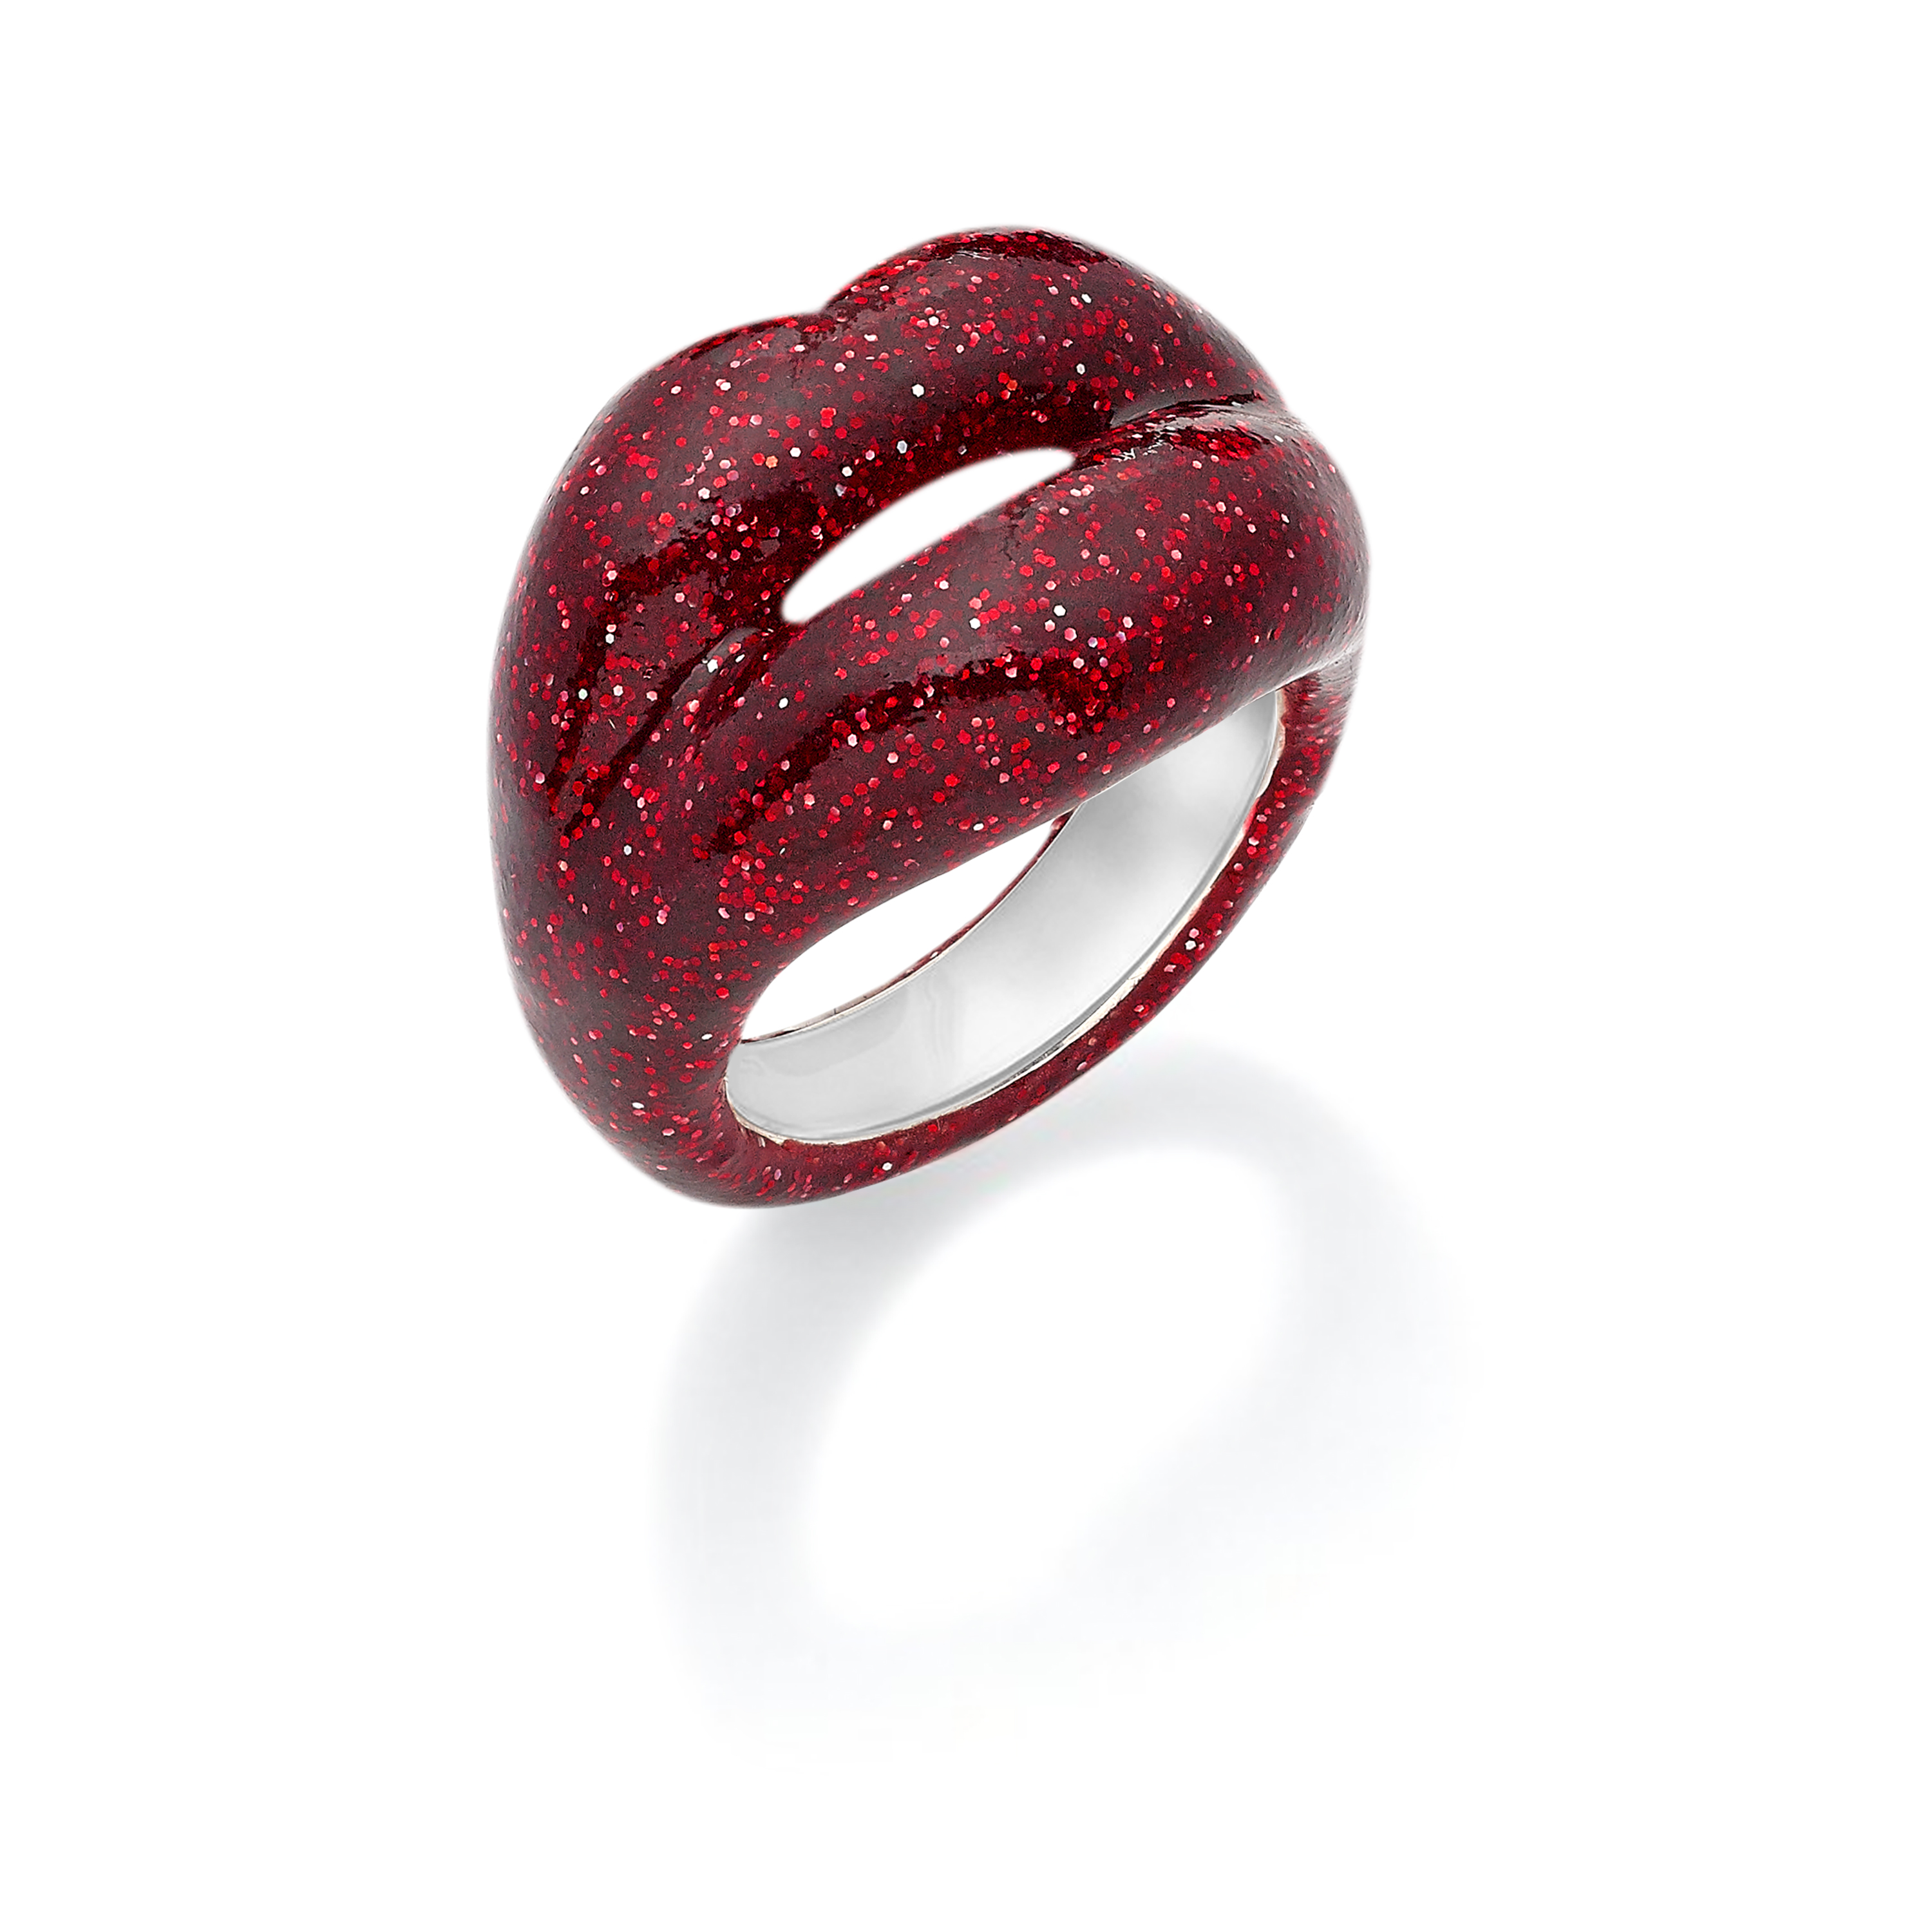 Jaspe rojo en anillo fabricado en plata de ley 925 mls